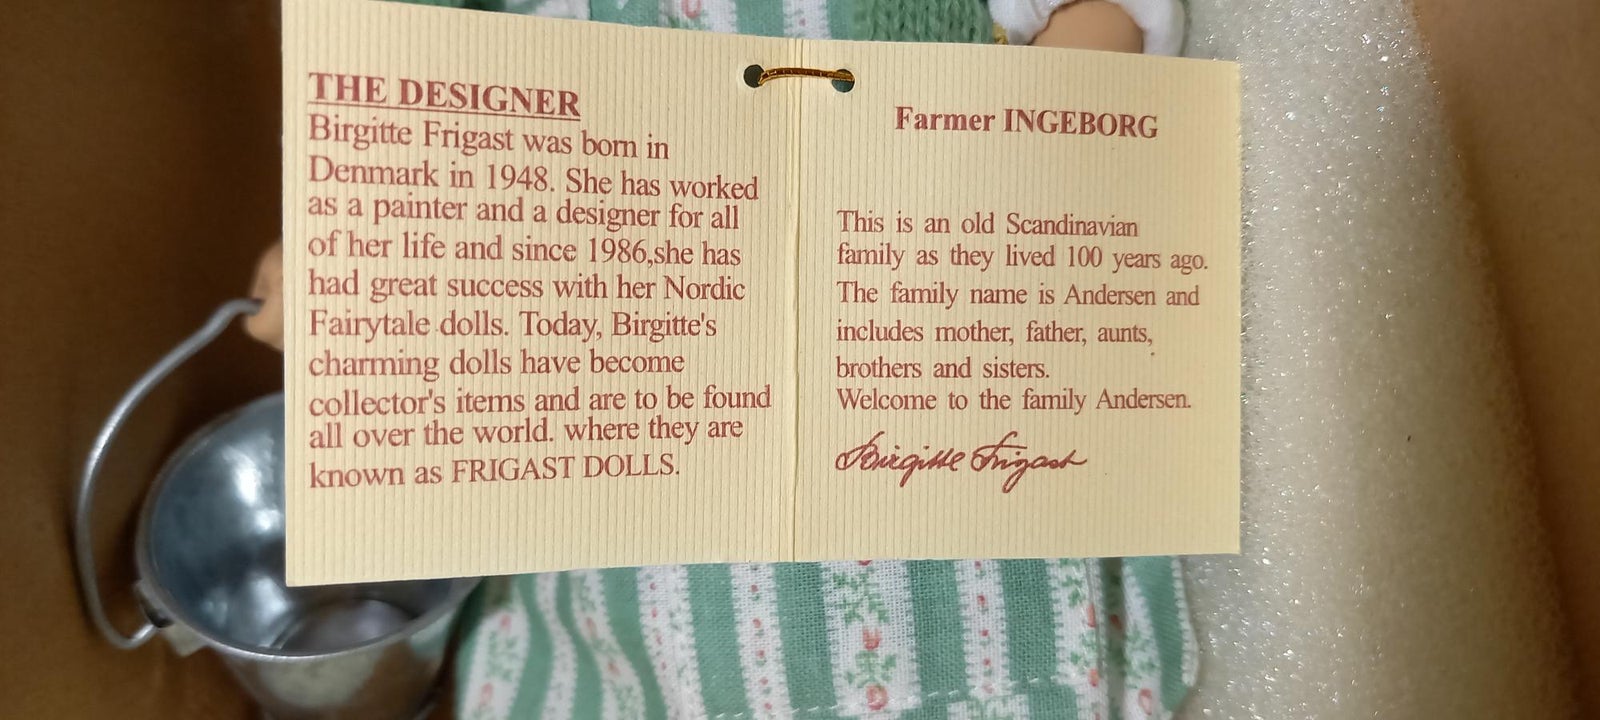 Dukker Farmer Ingeborg, Frigast